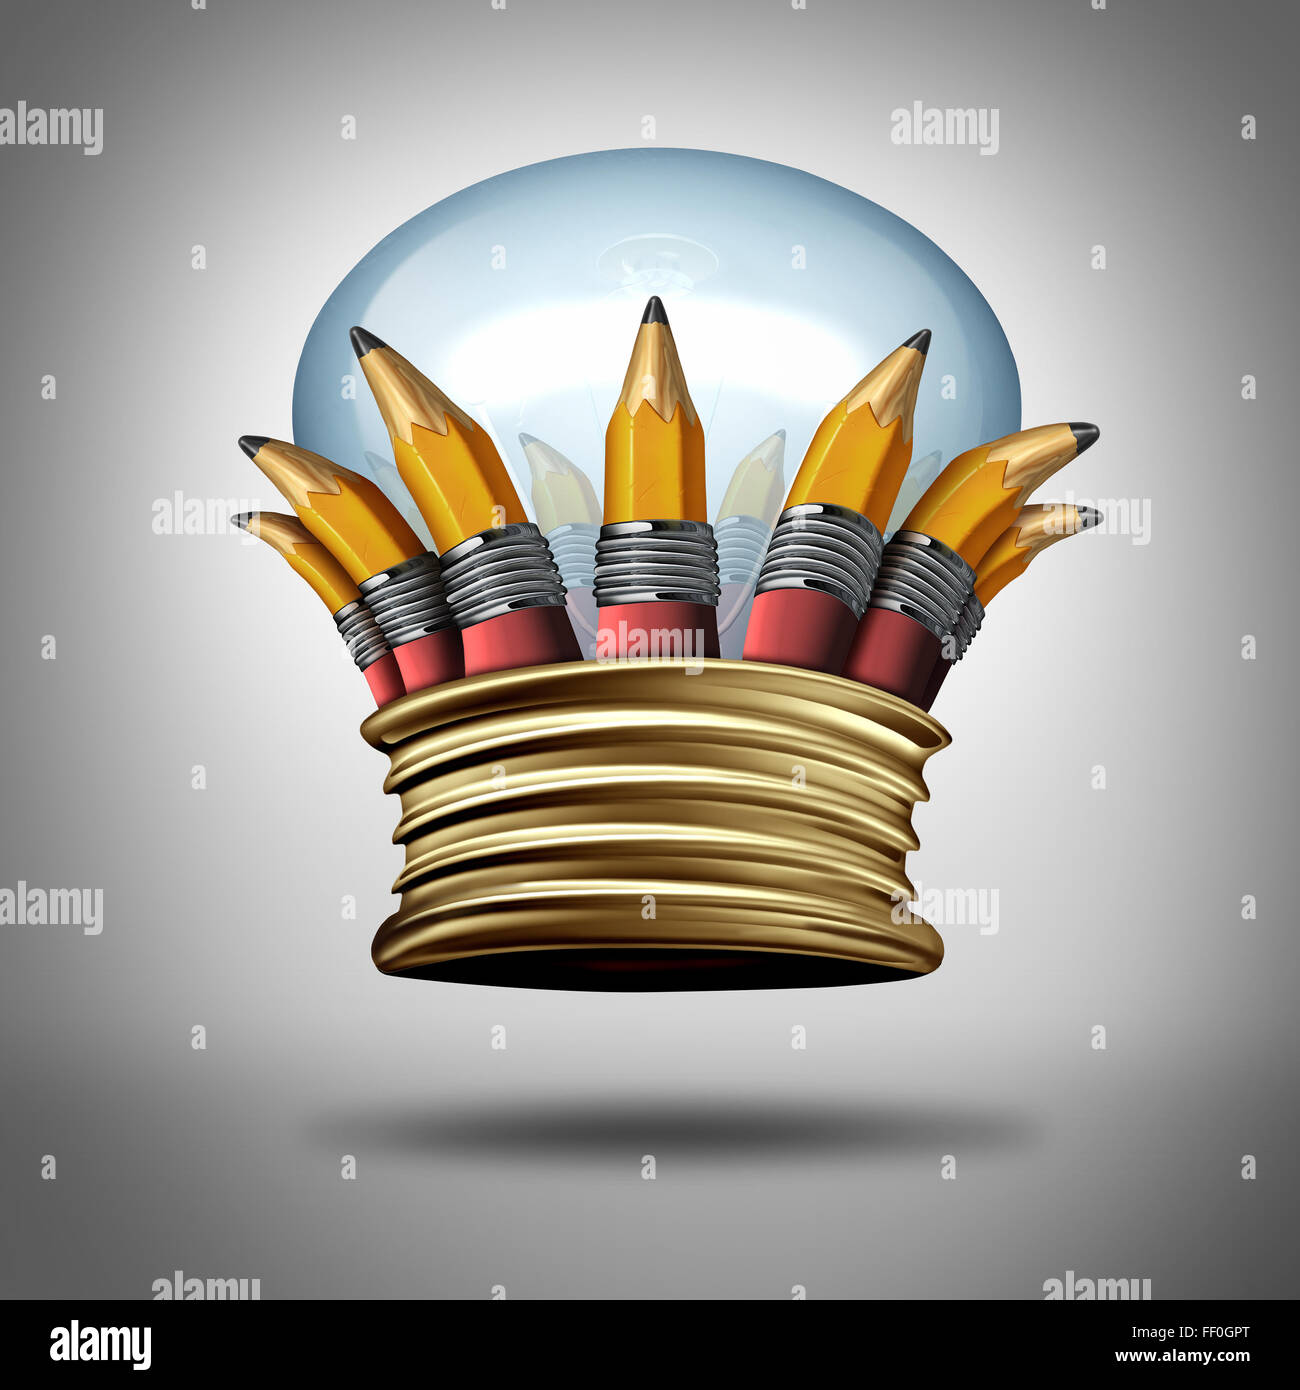 Innovation und Ideen king Krone als eine Gruppe von Bleistiften und eine Glühlampe oder Glühbirne geformt wie ein königliches Wappen als kreativen Erfolg Auszeichnung für Phantasie und die beste Kreativität. Stockfoto